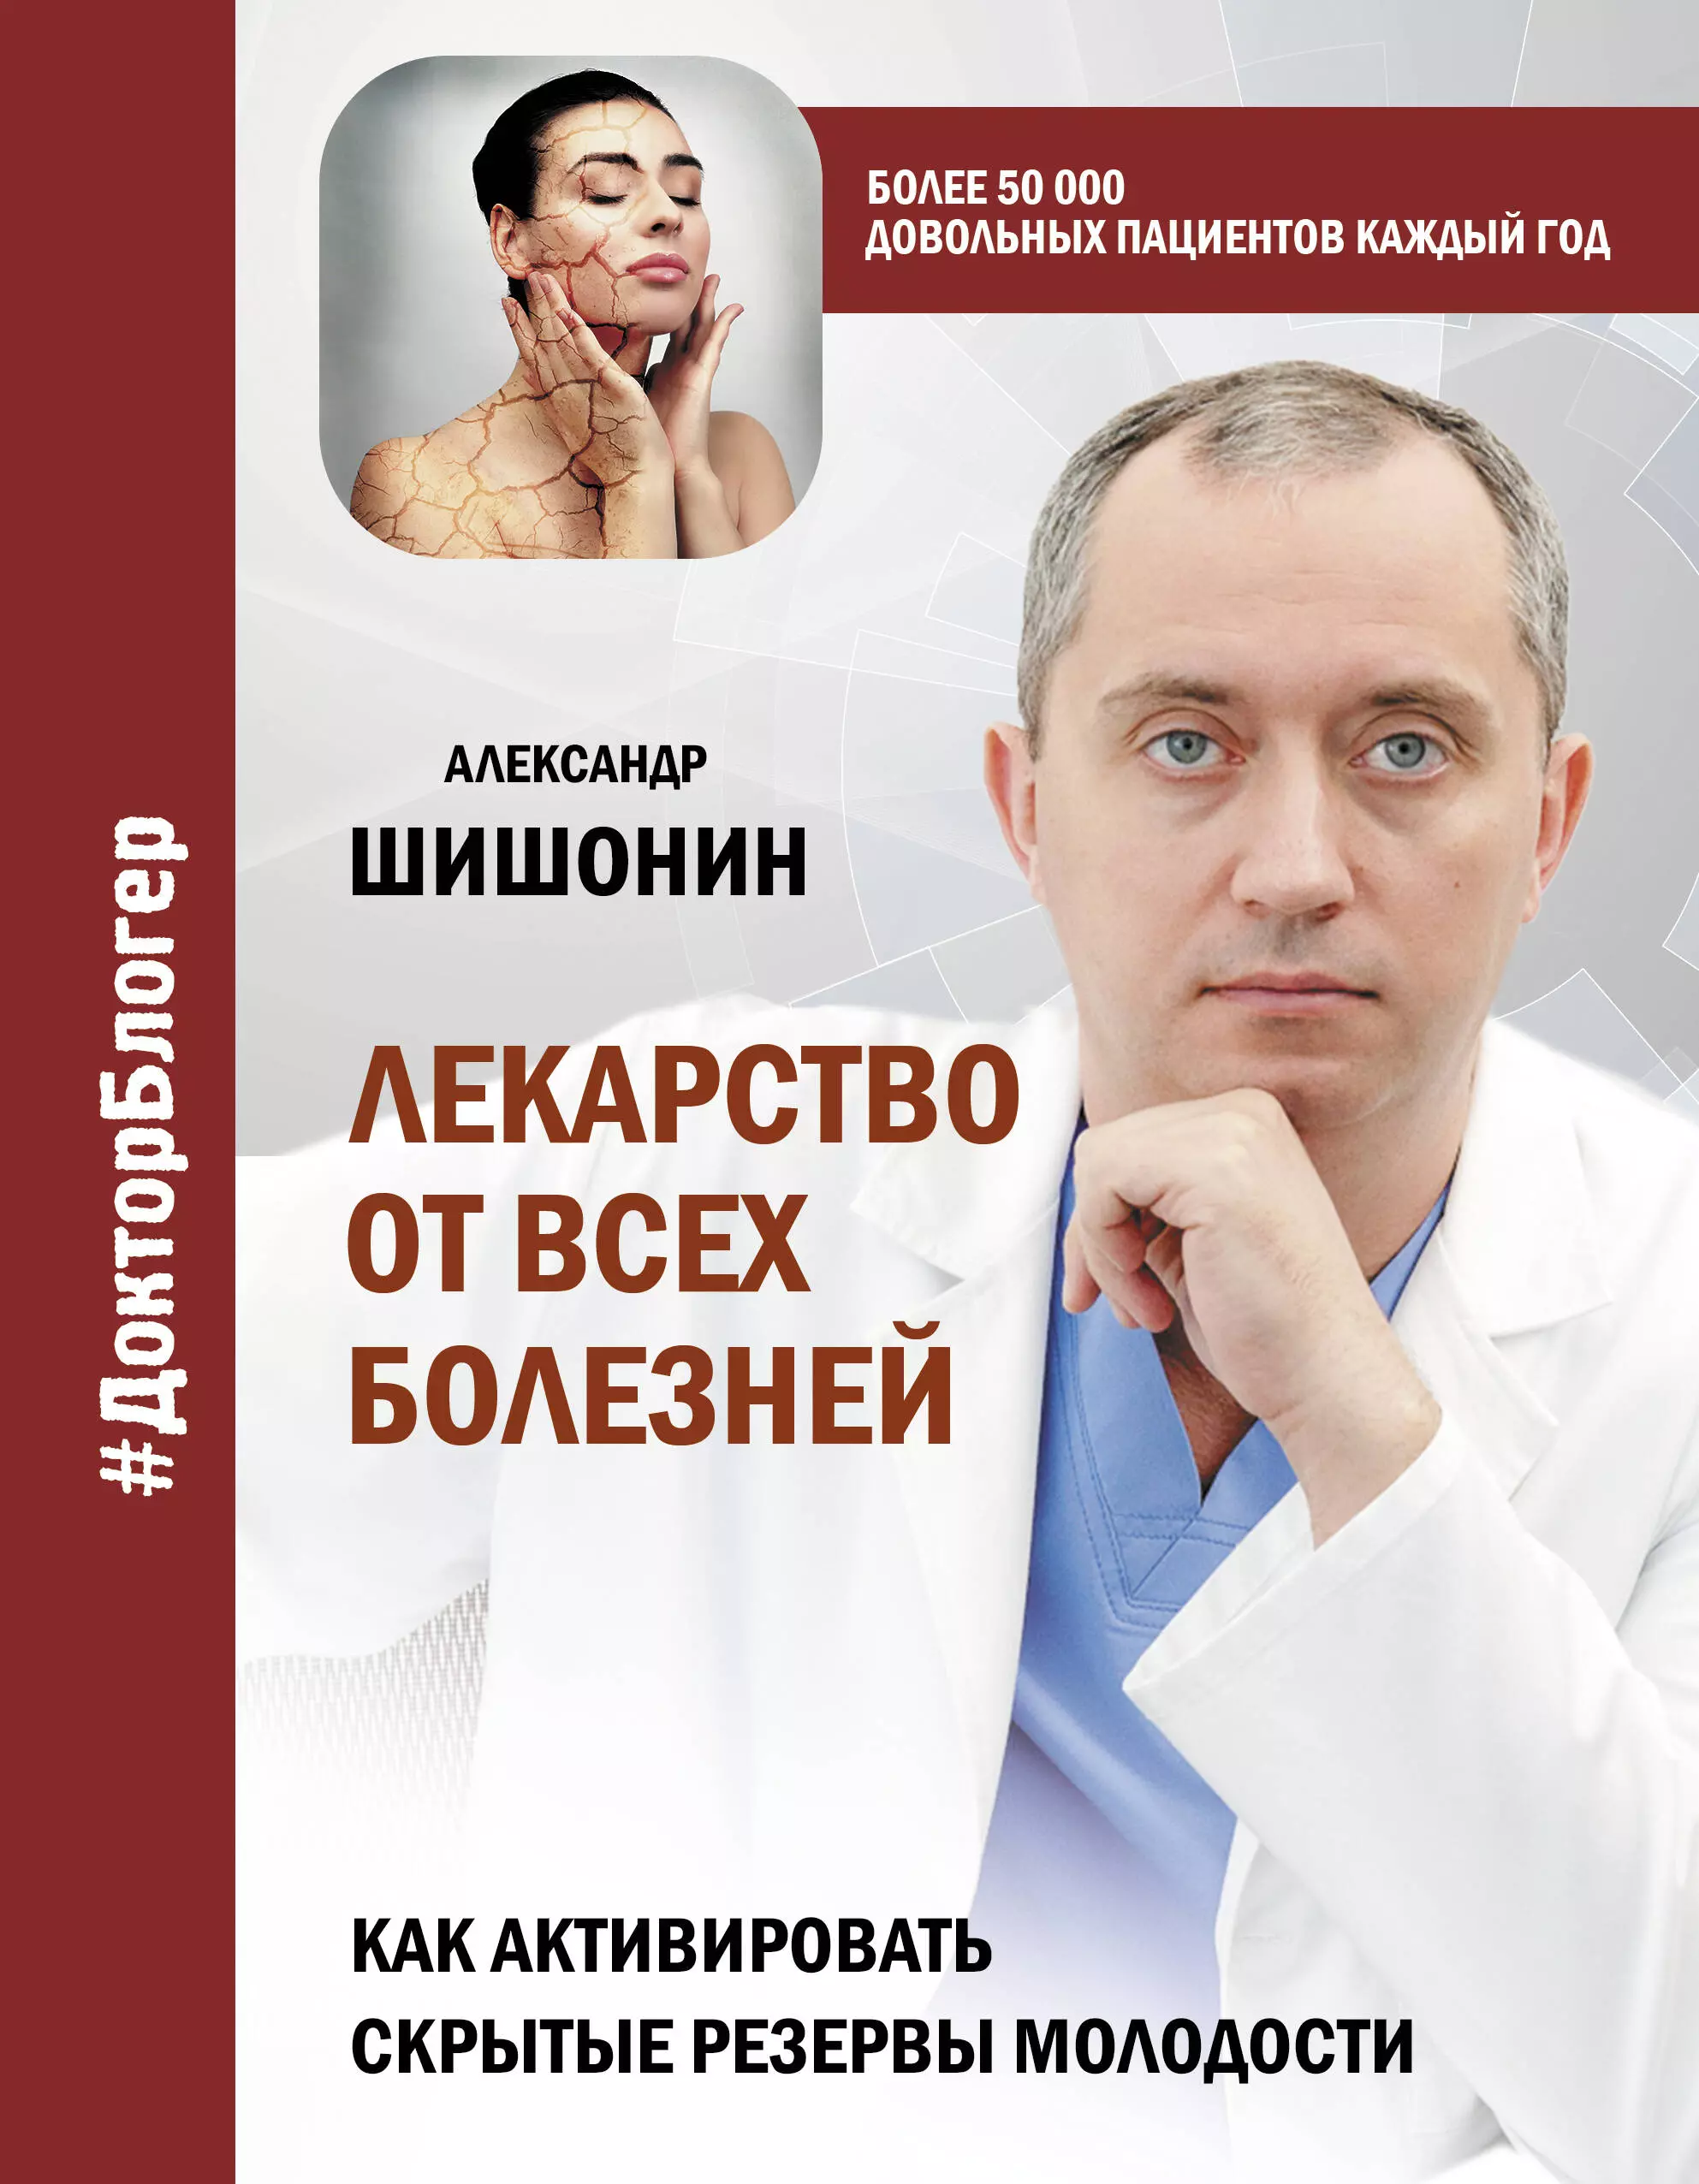 Шишонин Александр Юрьевич - Лекарство от всех болезней. Как активировать скрытые резервы молодости